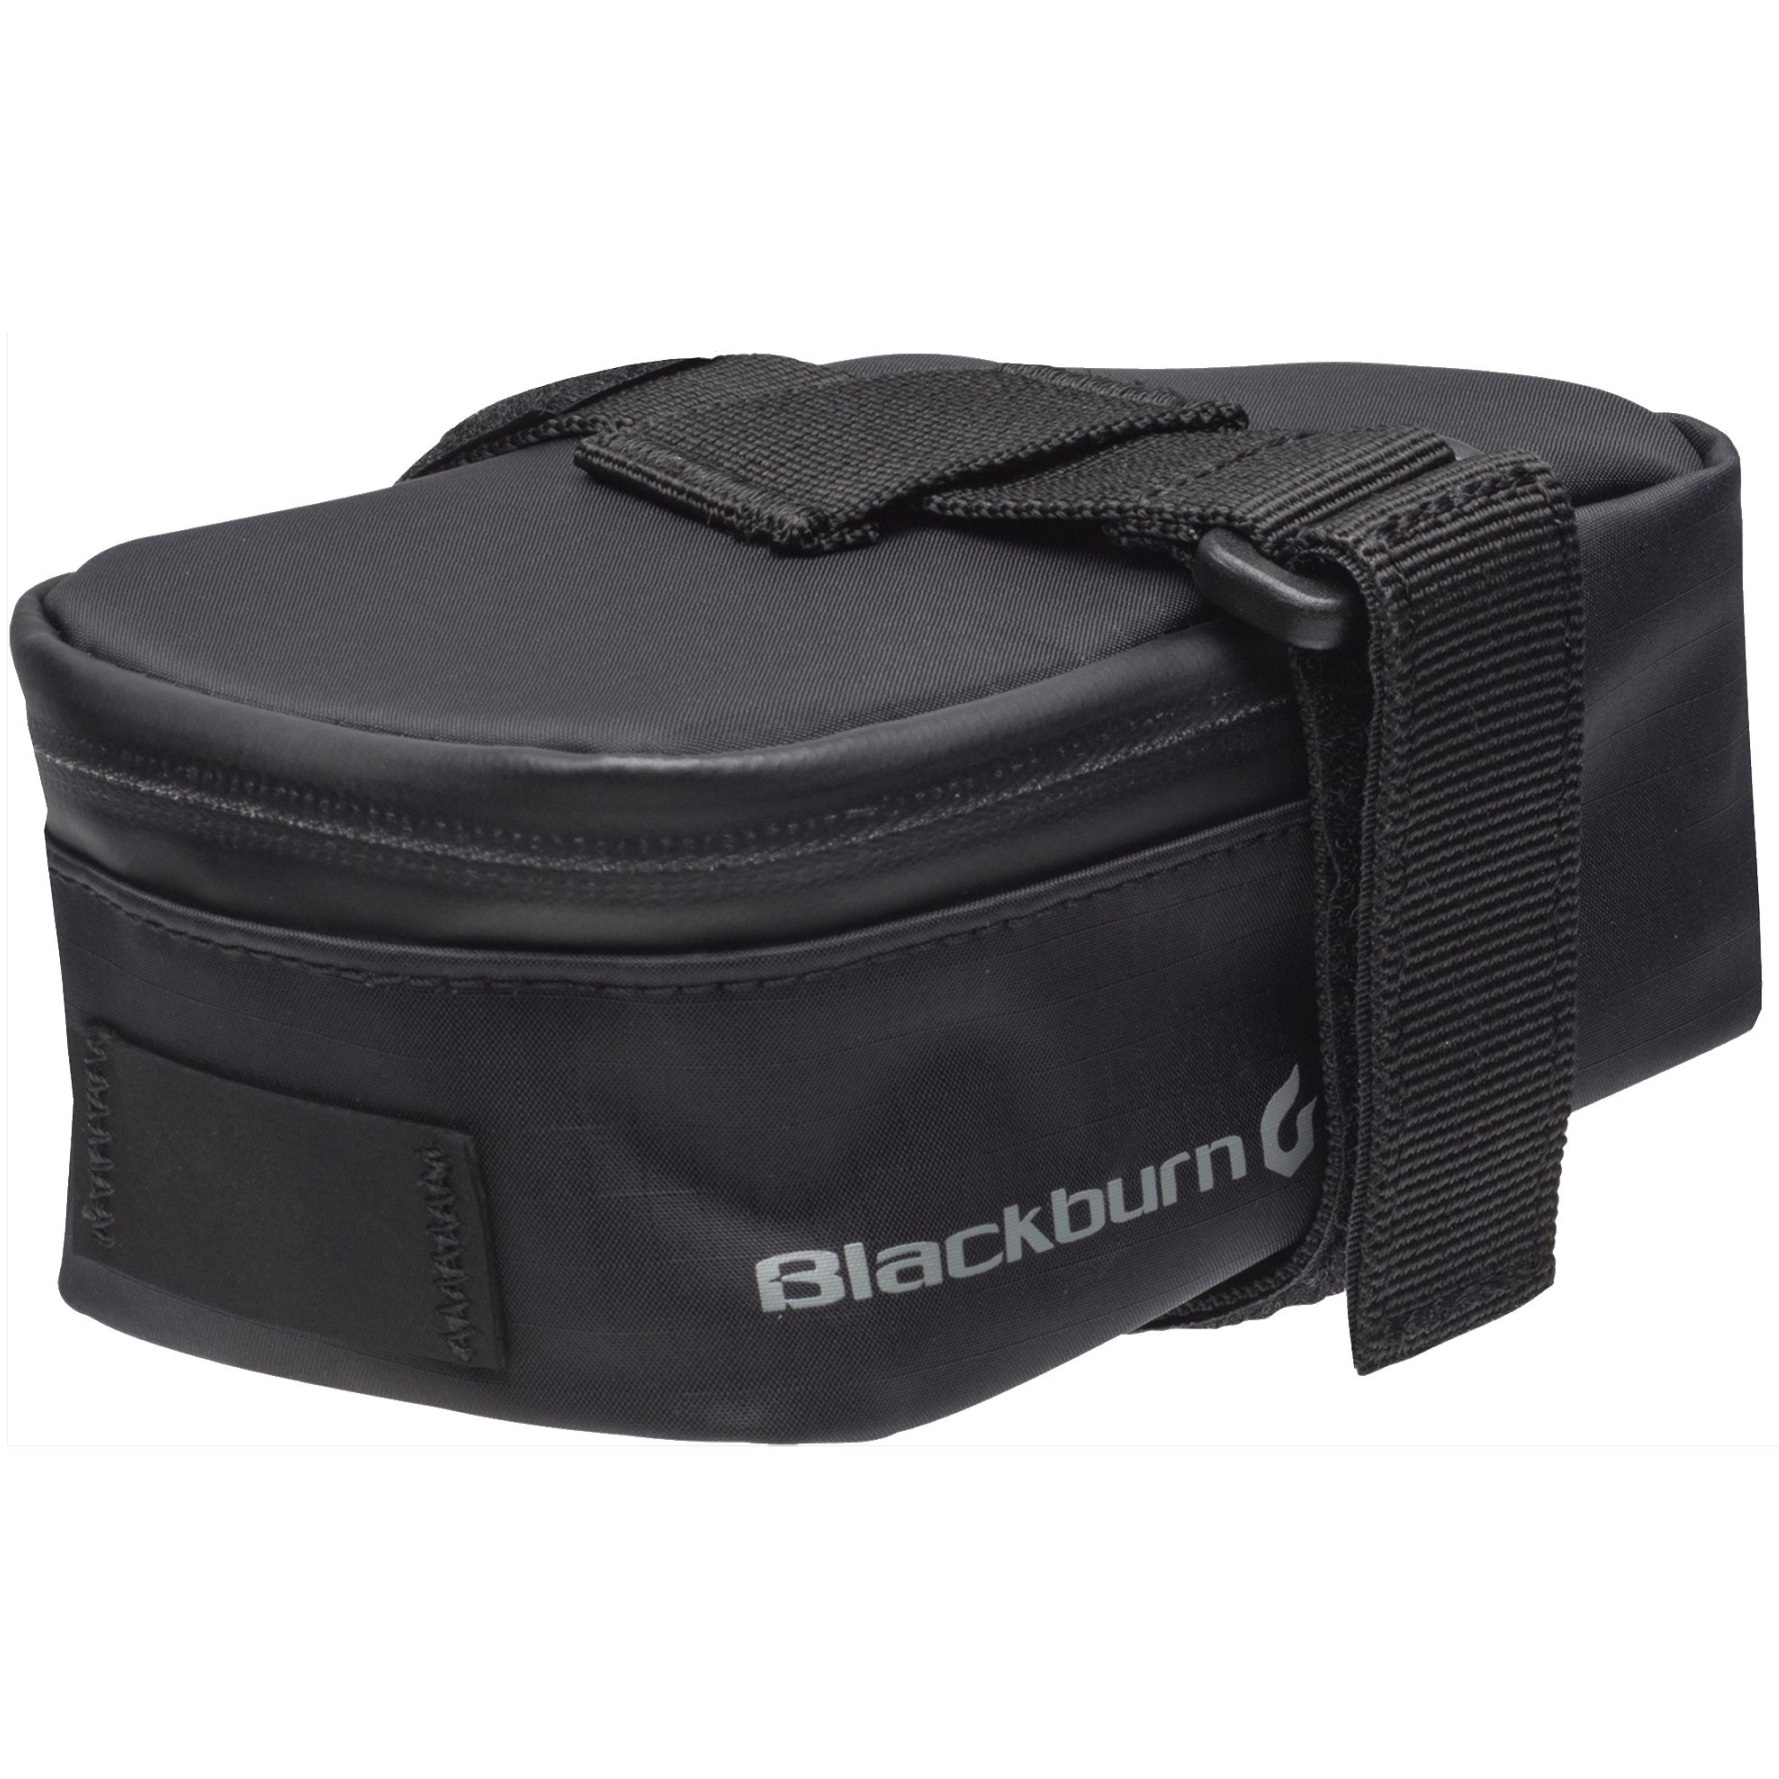 Productfoto van Blackburn Grid MTB Seat Bag - black reflective